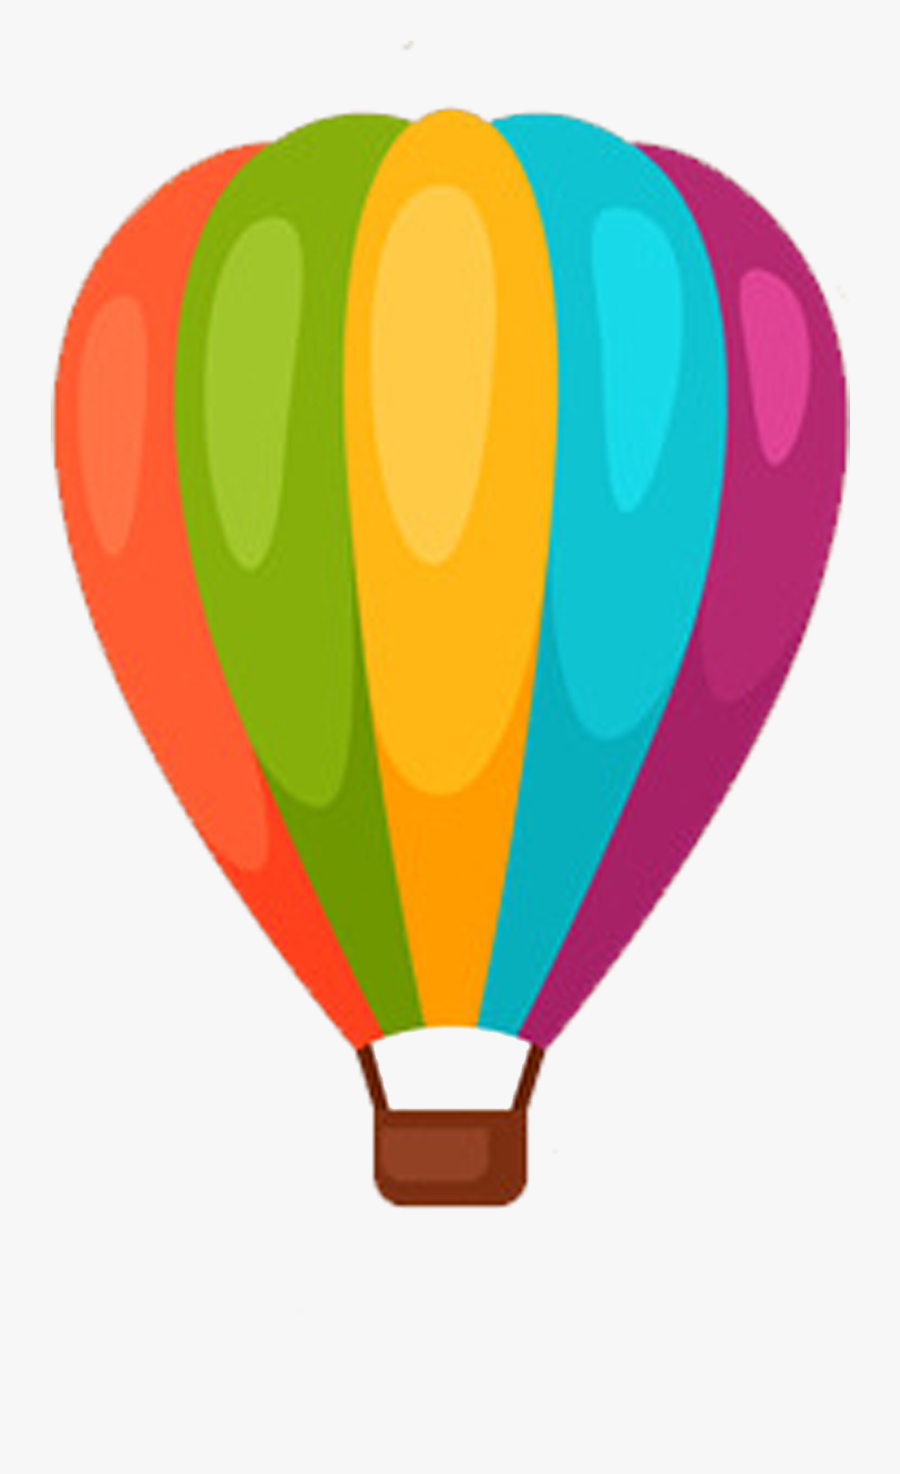 Clipart Hearts Hot Air Balloon - Cartoon Hot Air Ballon, Transparent Clipart